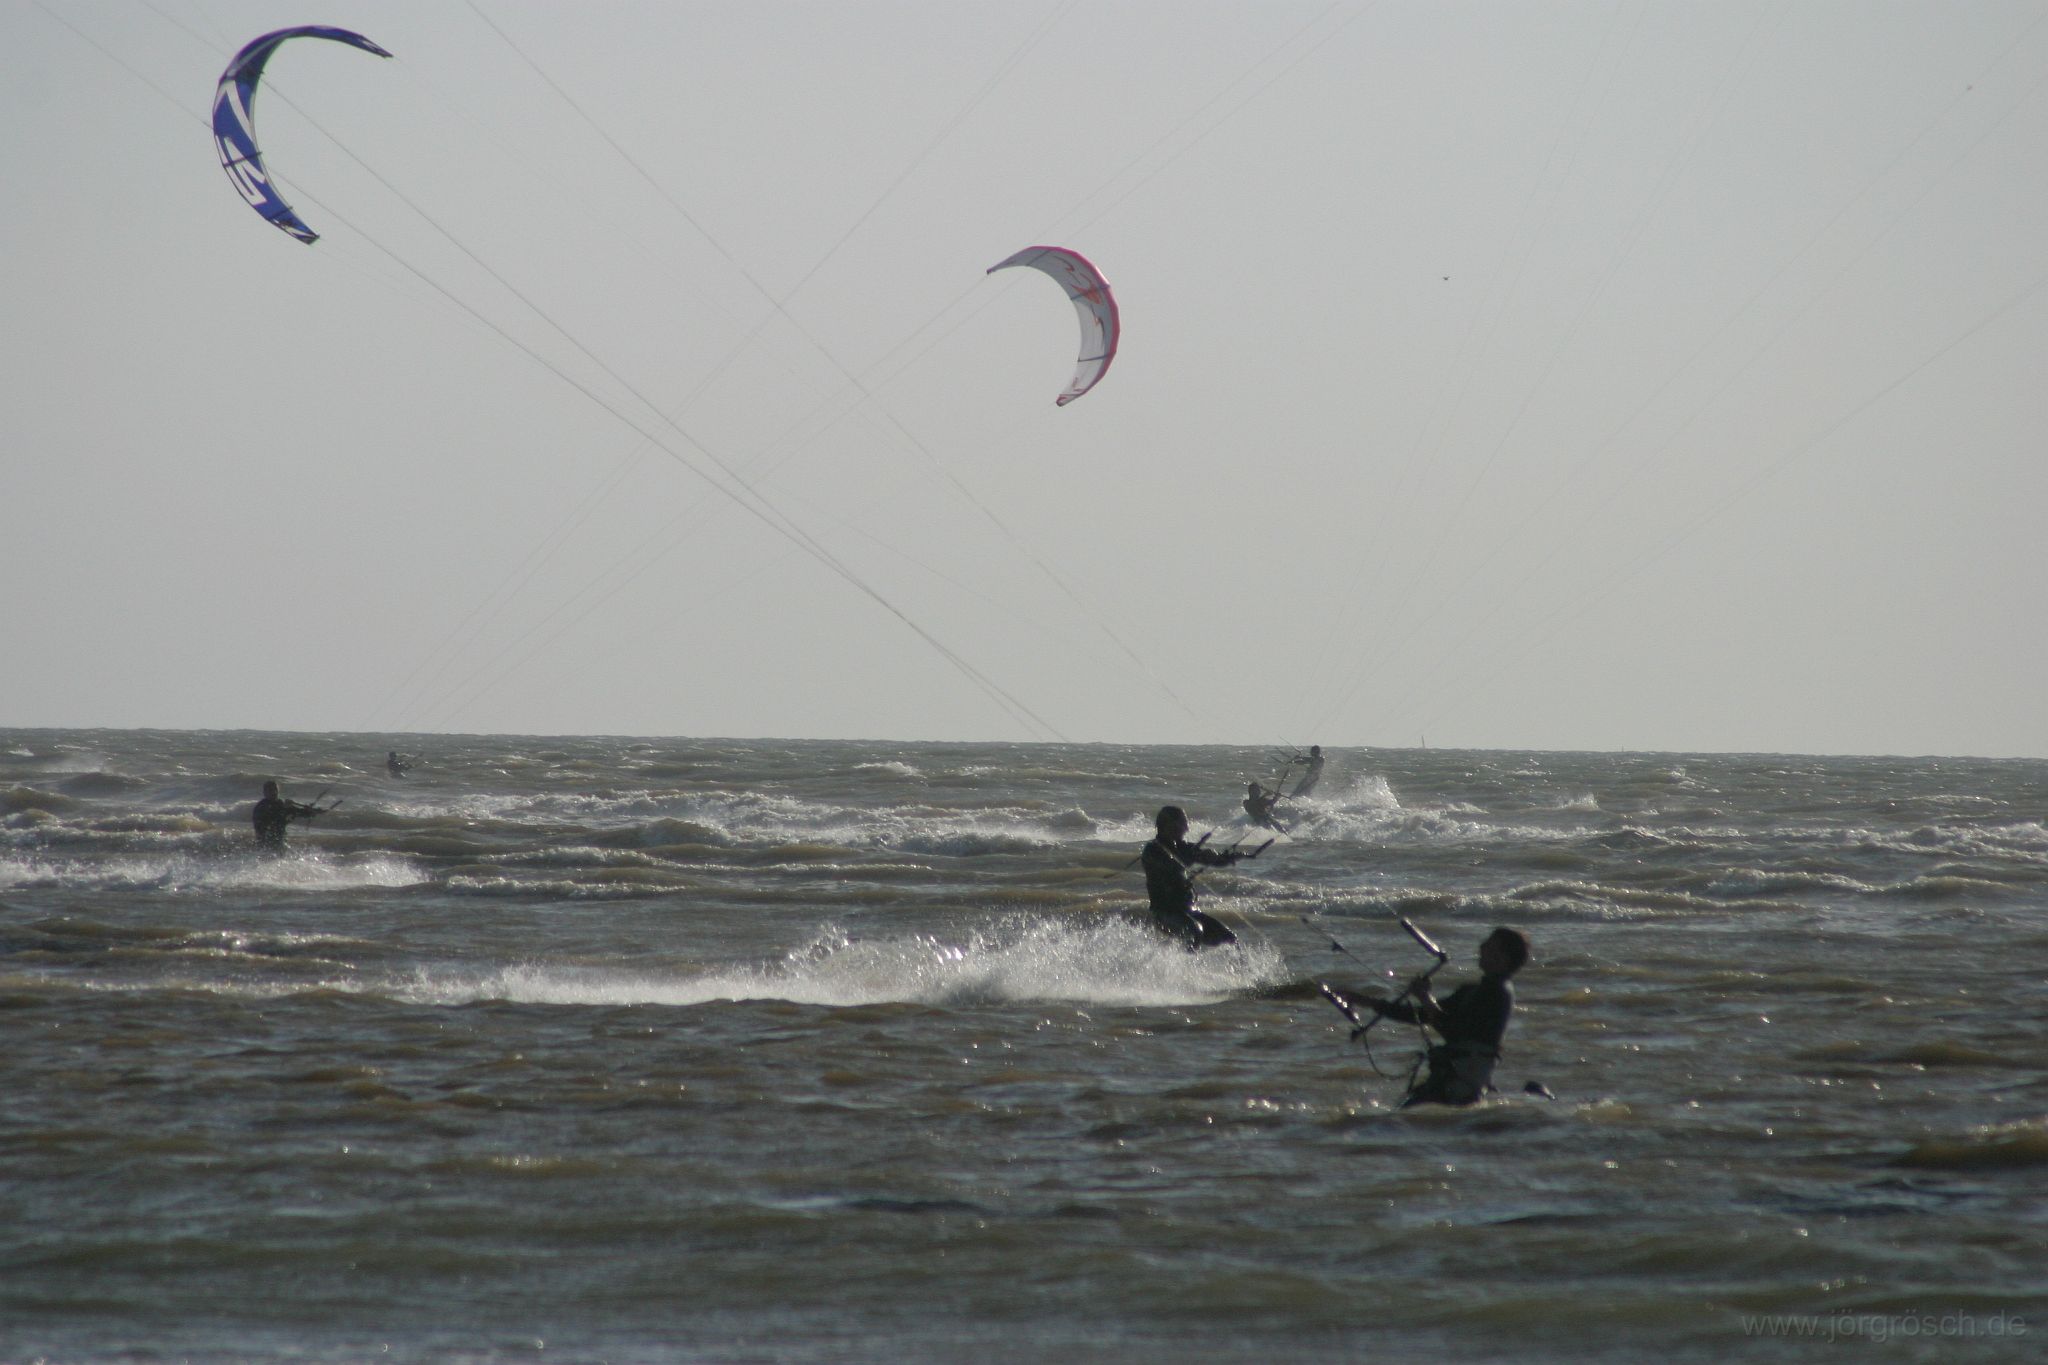 200406 zeebrugge.jpg - Kite surfen in Zeebrugge